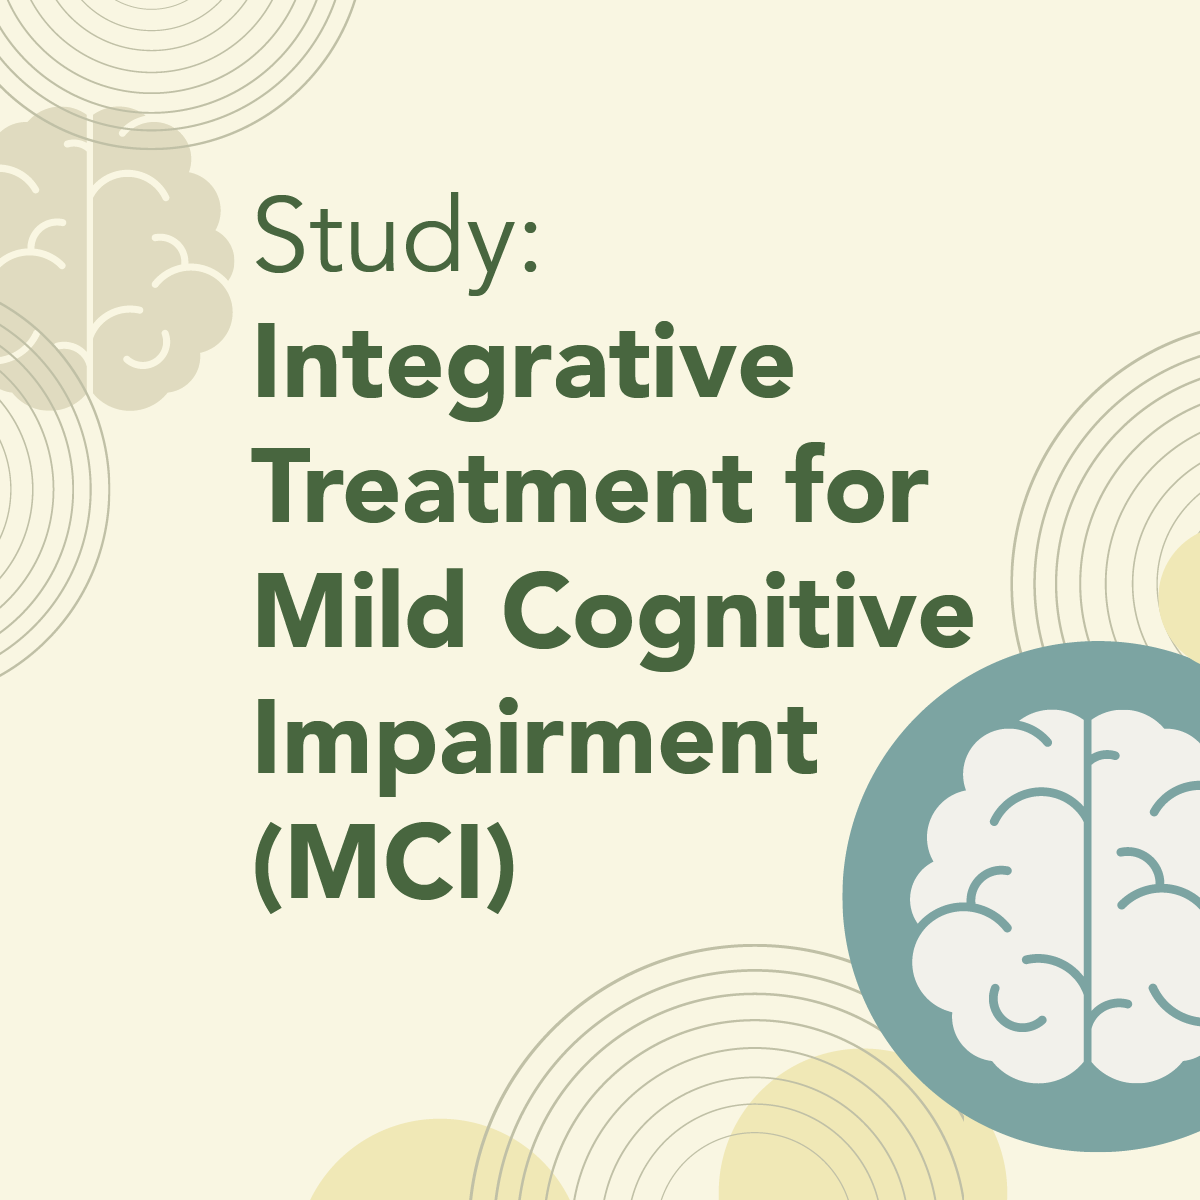 Study Integrative Treatment for Mild Cognitive Impairment MCI